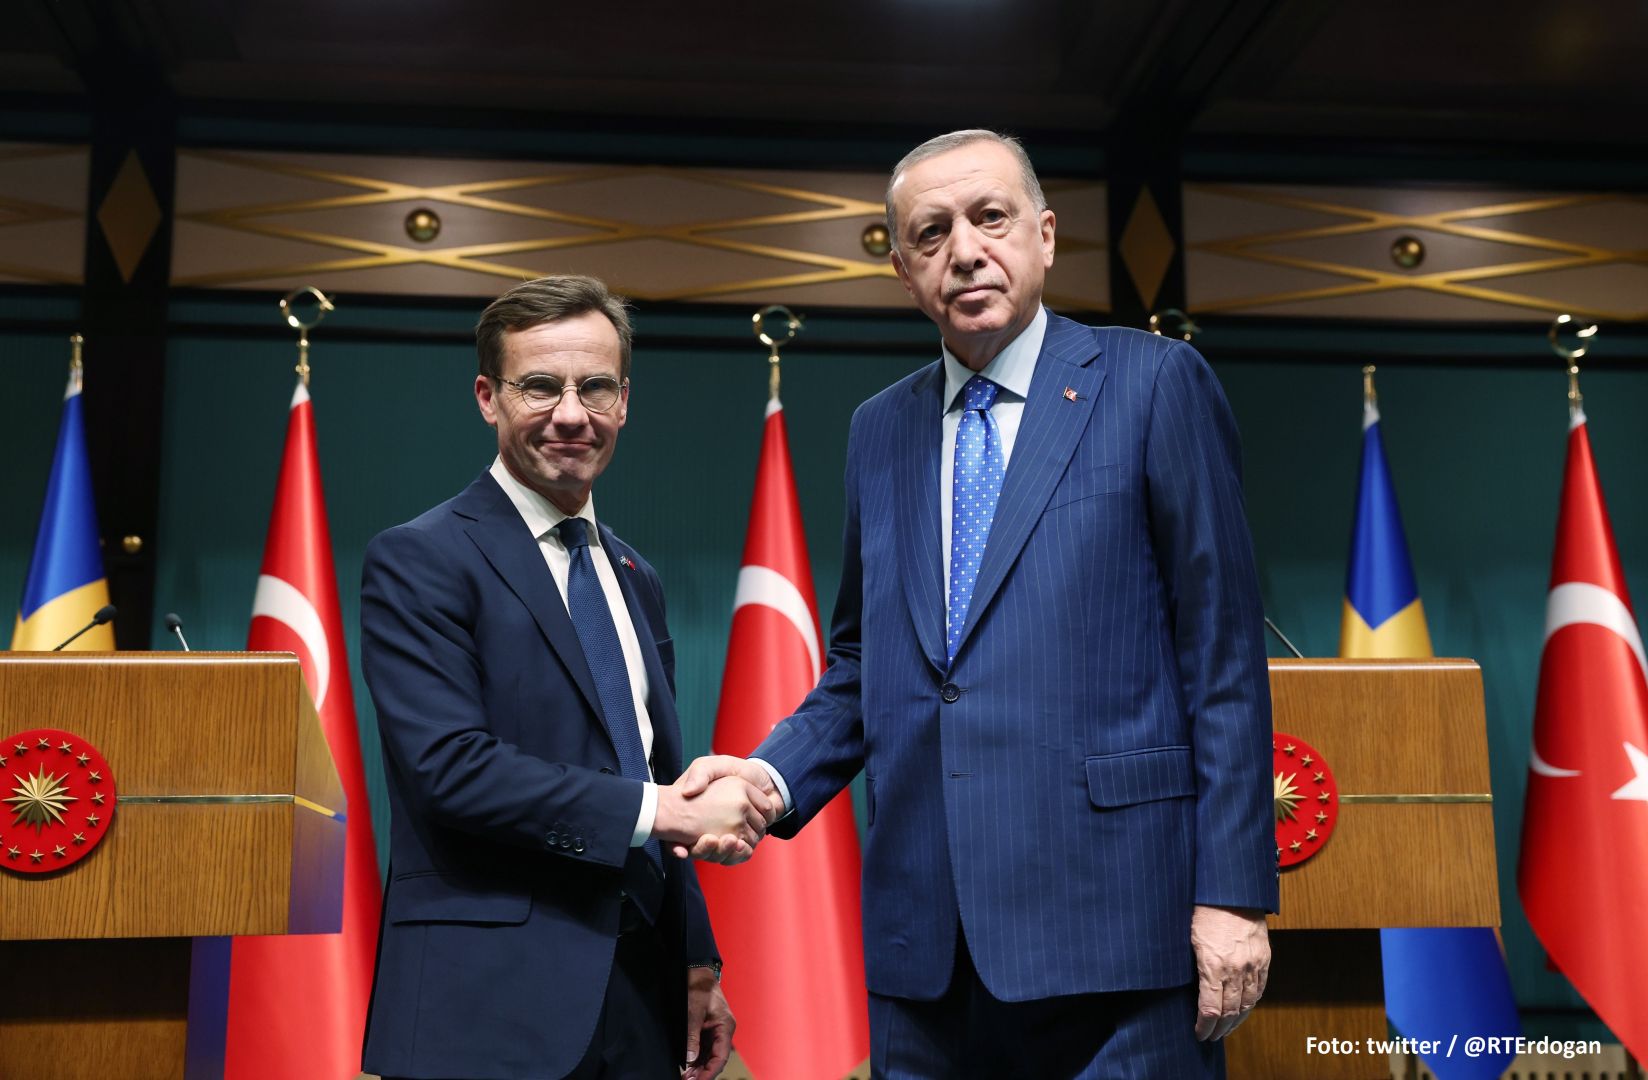 Türkiye und Schweden wollen ihre Beziehungen im Rahmen der NATO-Gespräche ausbauen